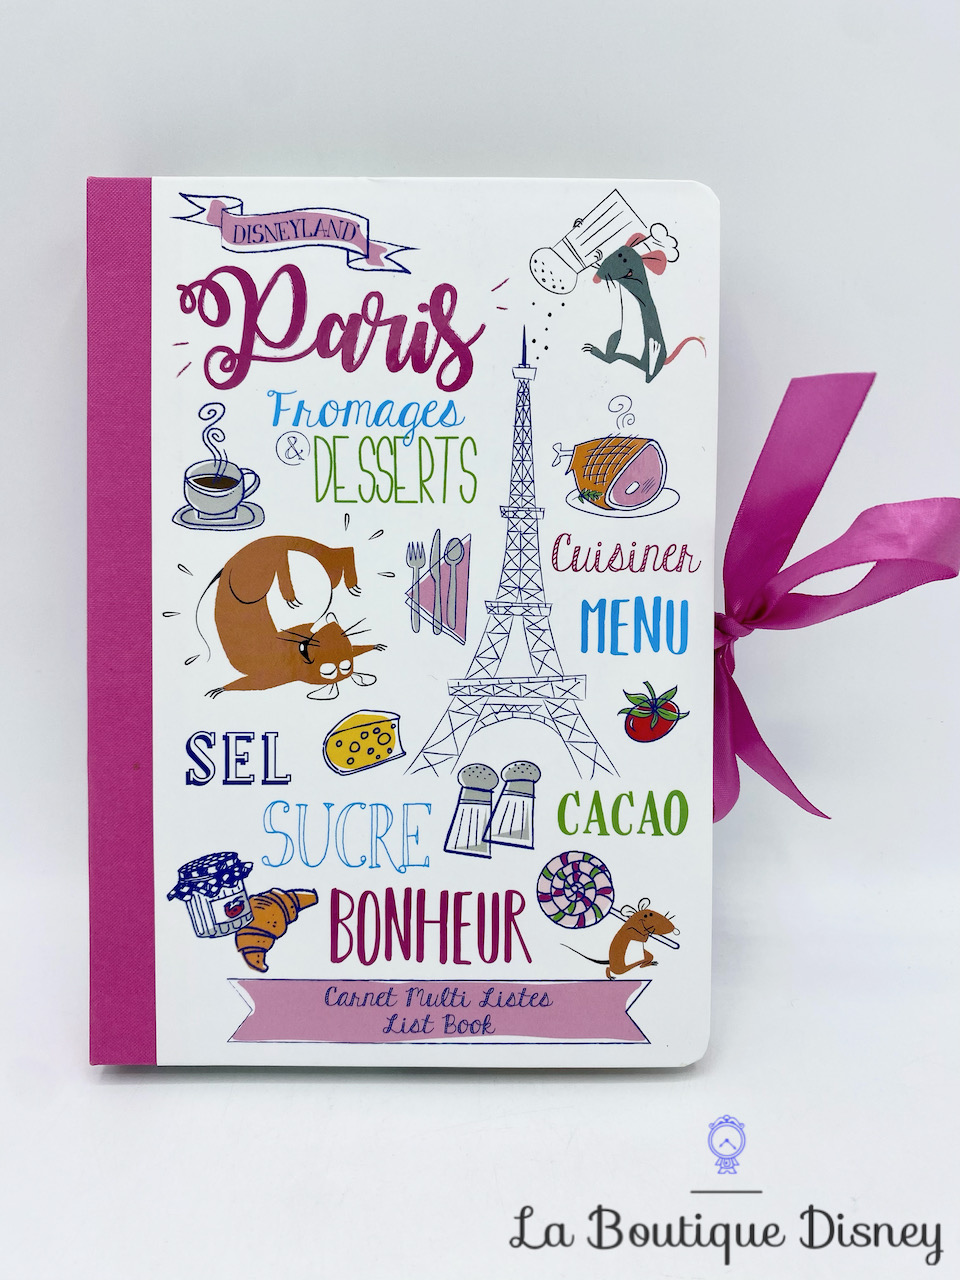 Carnet Ratatouille Tour Eiffel Disneyland Paris Disney Multi listes post it cahier notes